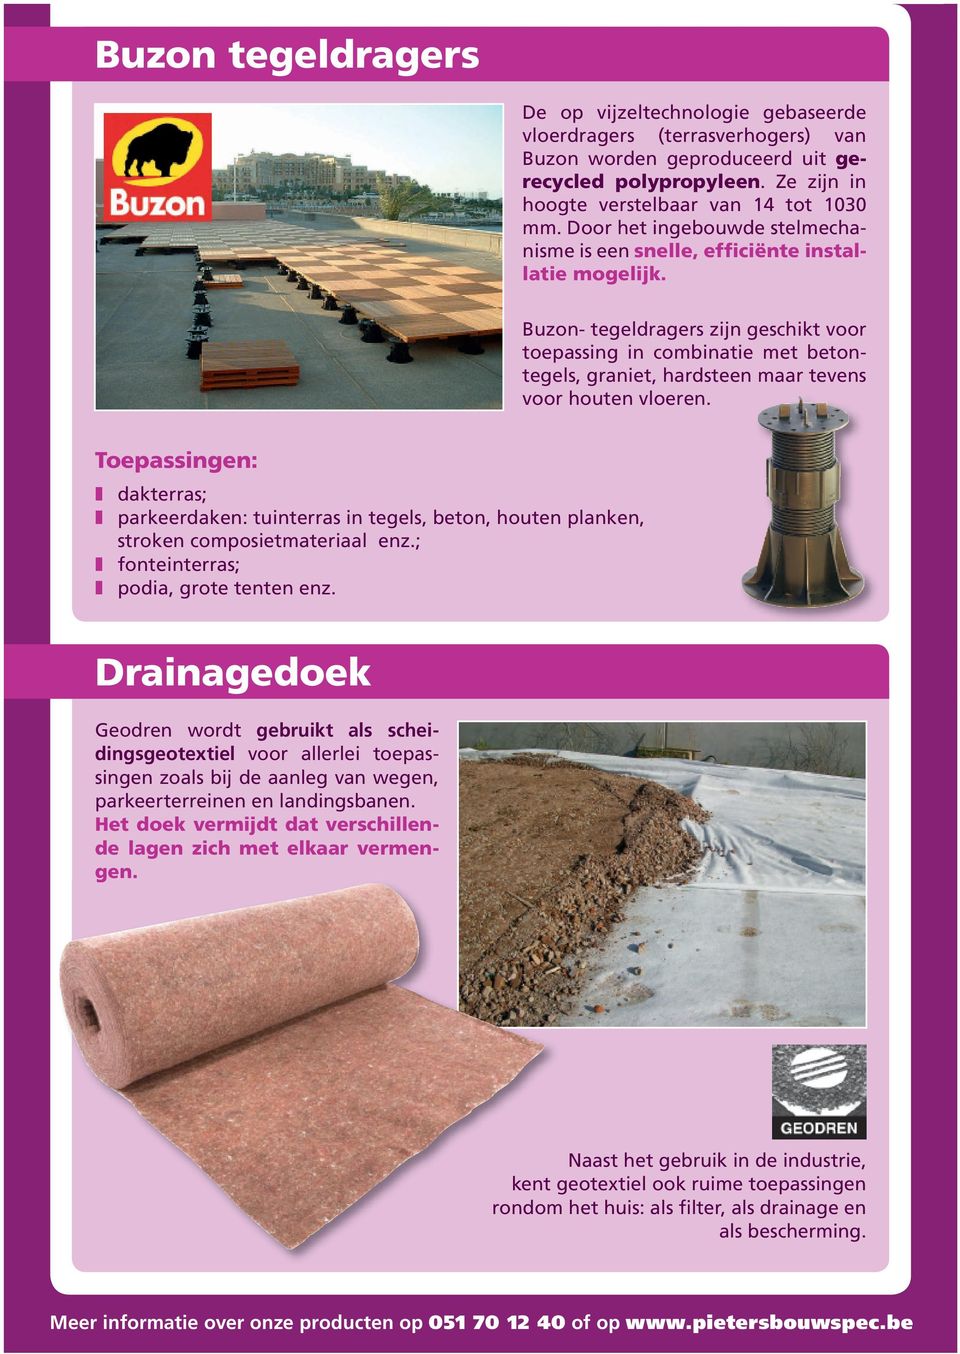 Buzon- tegeldragers zijn geschikt voor toepassing in combinatie met betontegels, graniet, hardsteen maar tevens voor houten vloeren.